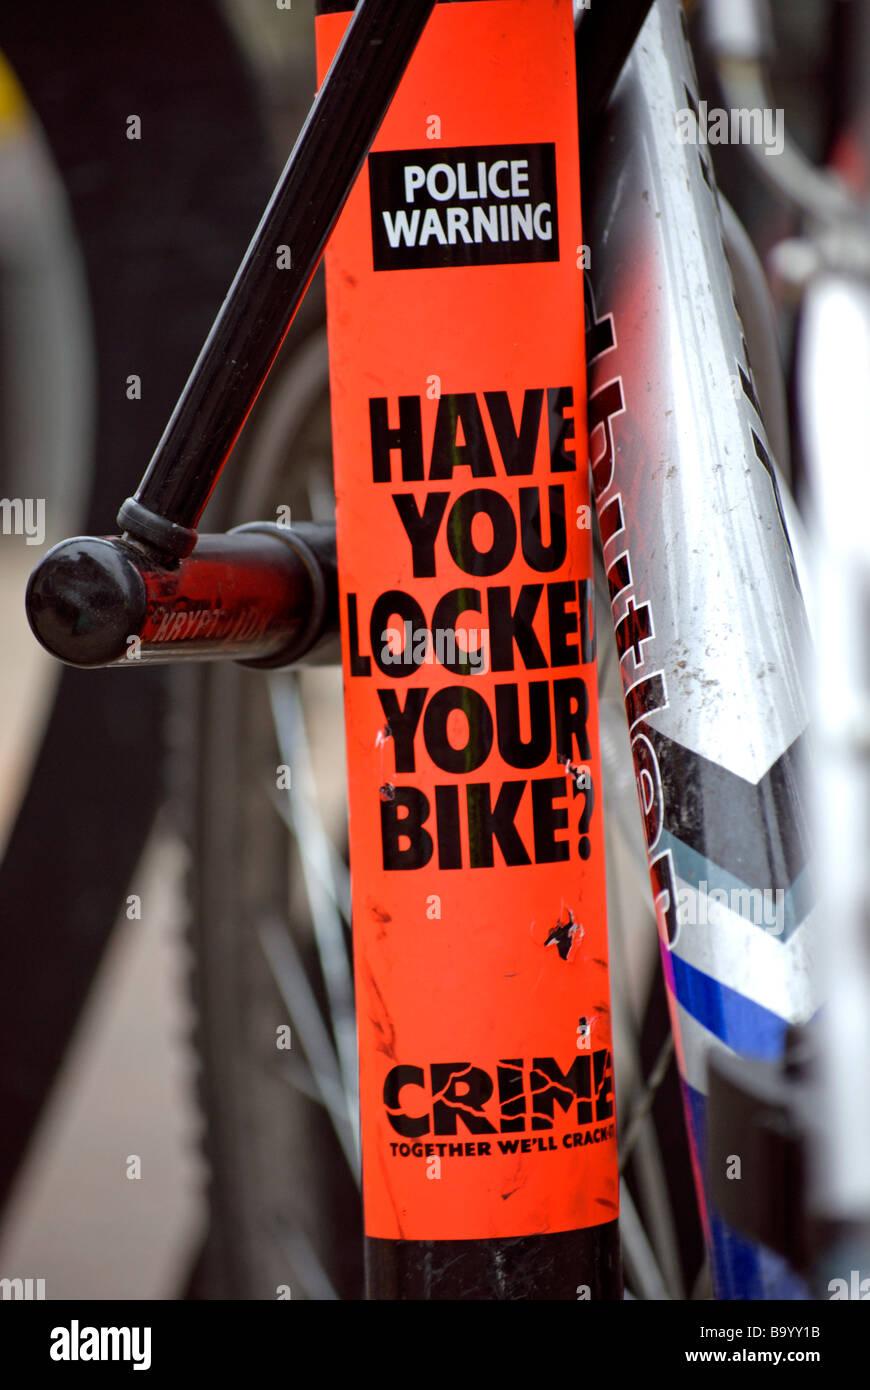 haben Sie Ihr Fahrrad gesperrt? Polizei-Warnhinweis auf einem britischen Zyklus-Gestell Stockfoto